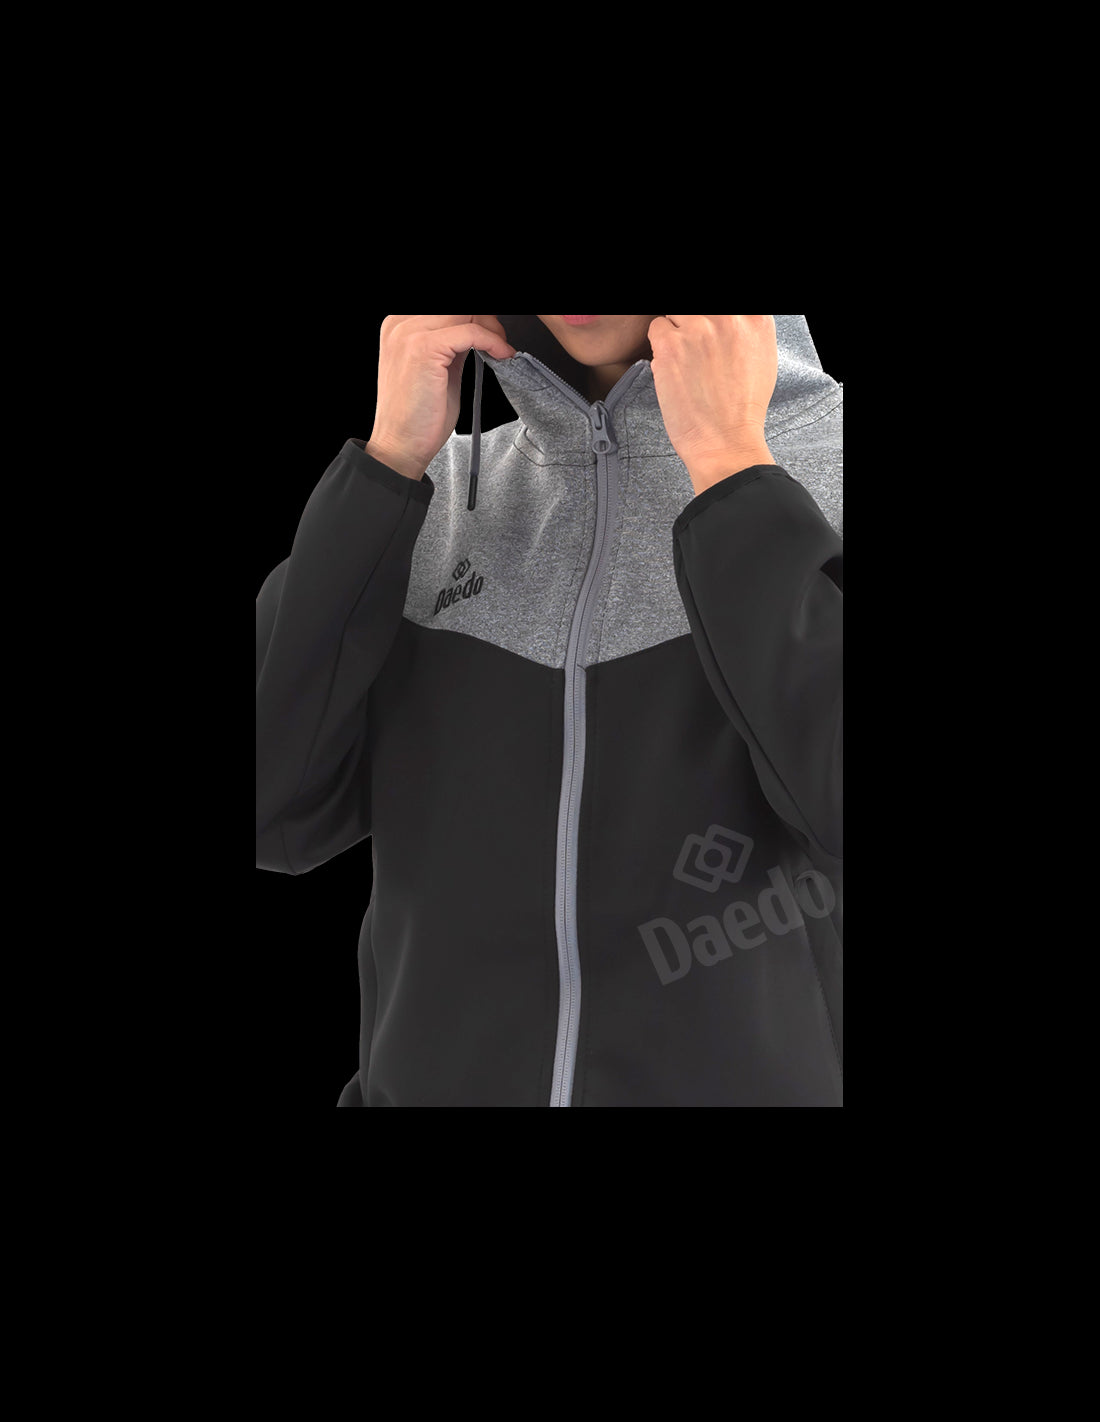 Daedo Trainingsanzug - schwarz/grau, CH1425